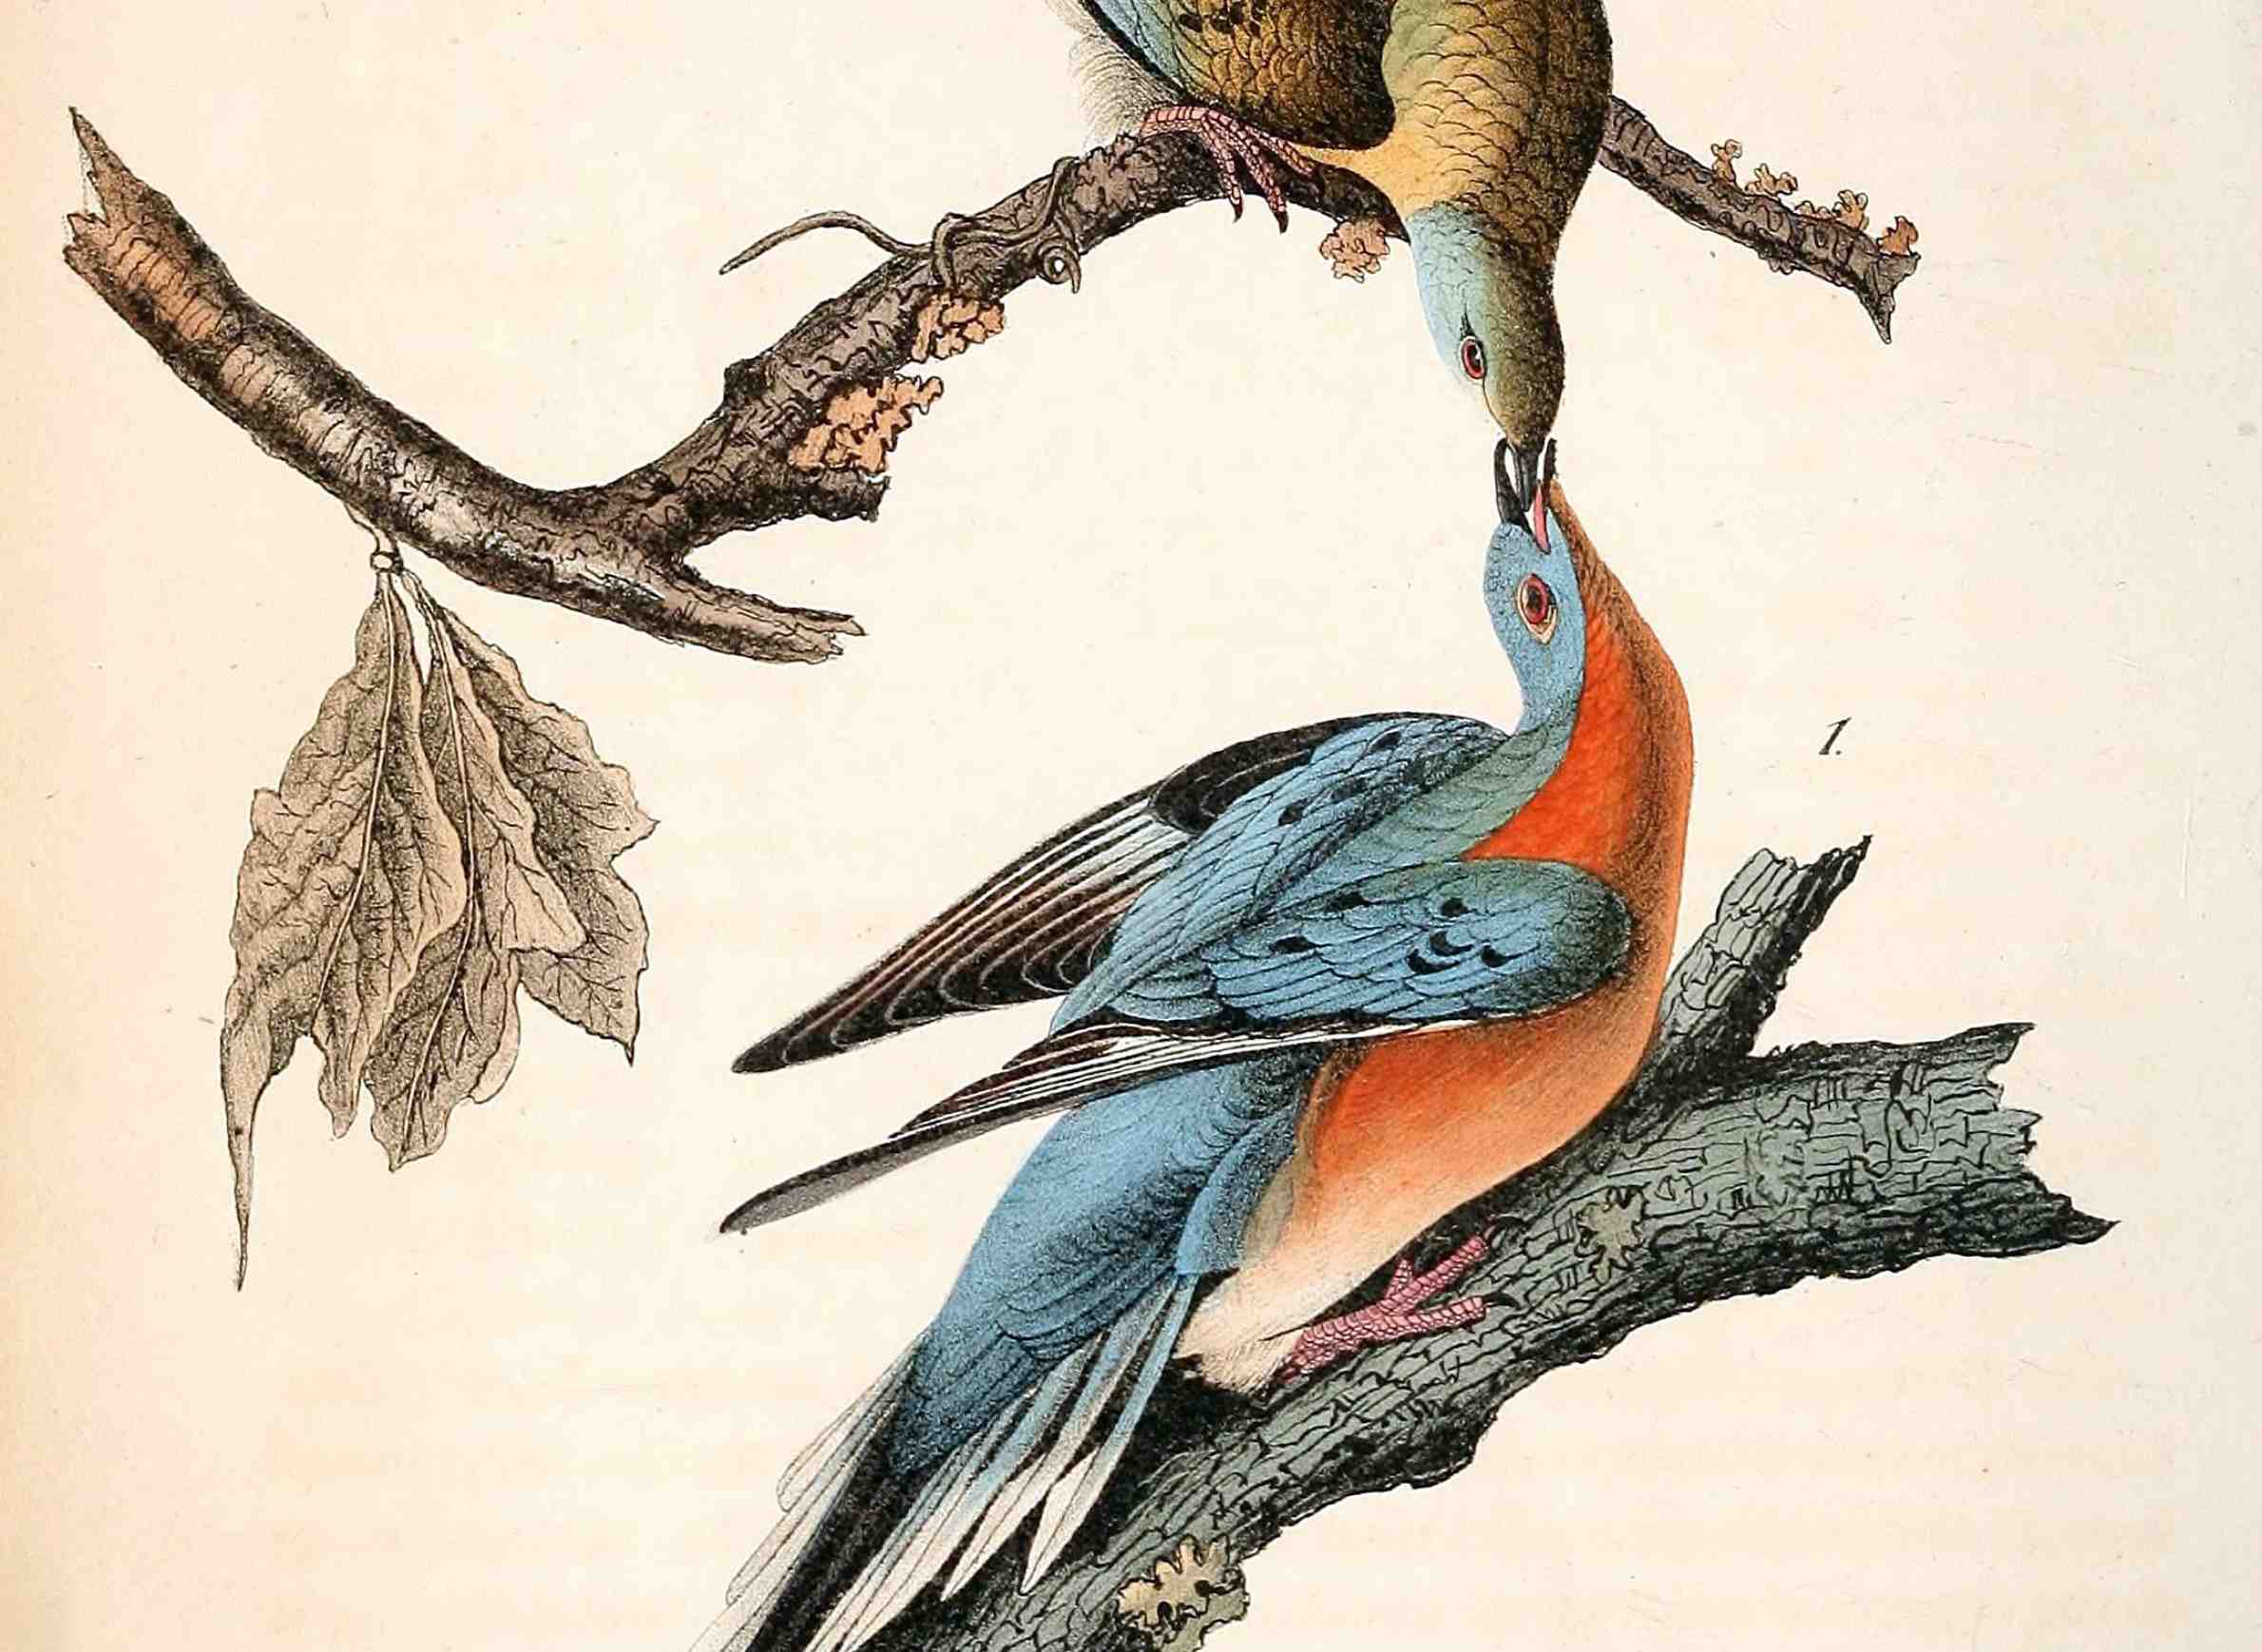 uplace-animals-passengerpigeons-mershons-engraving-audubon.jpg